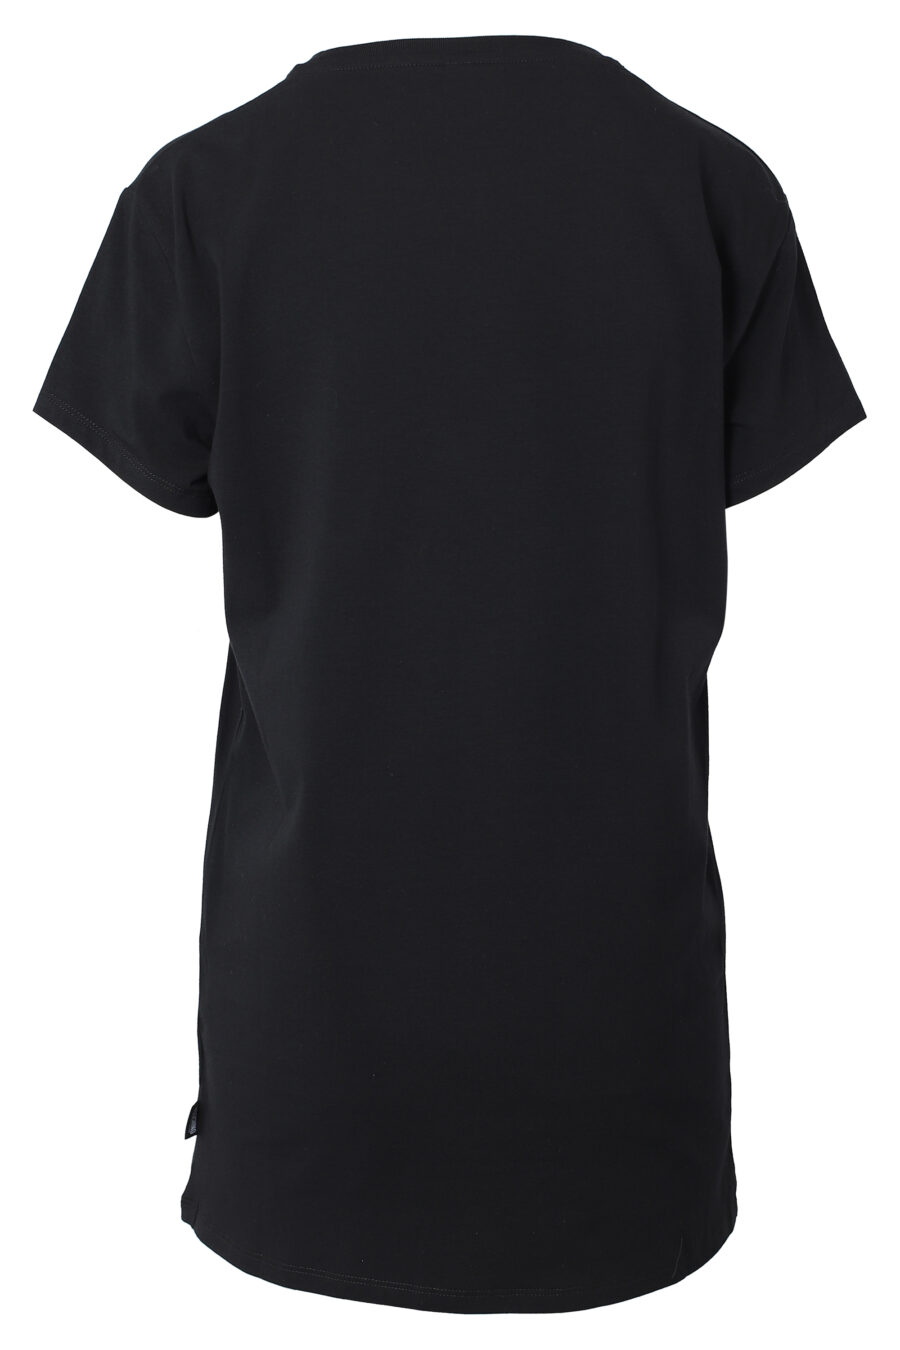 T-shirt maxi preta com mini logótipo de urso por baixo - IMG 9808